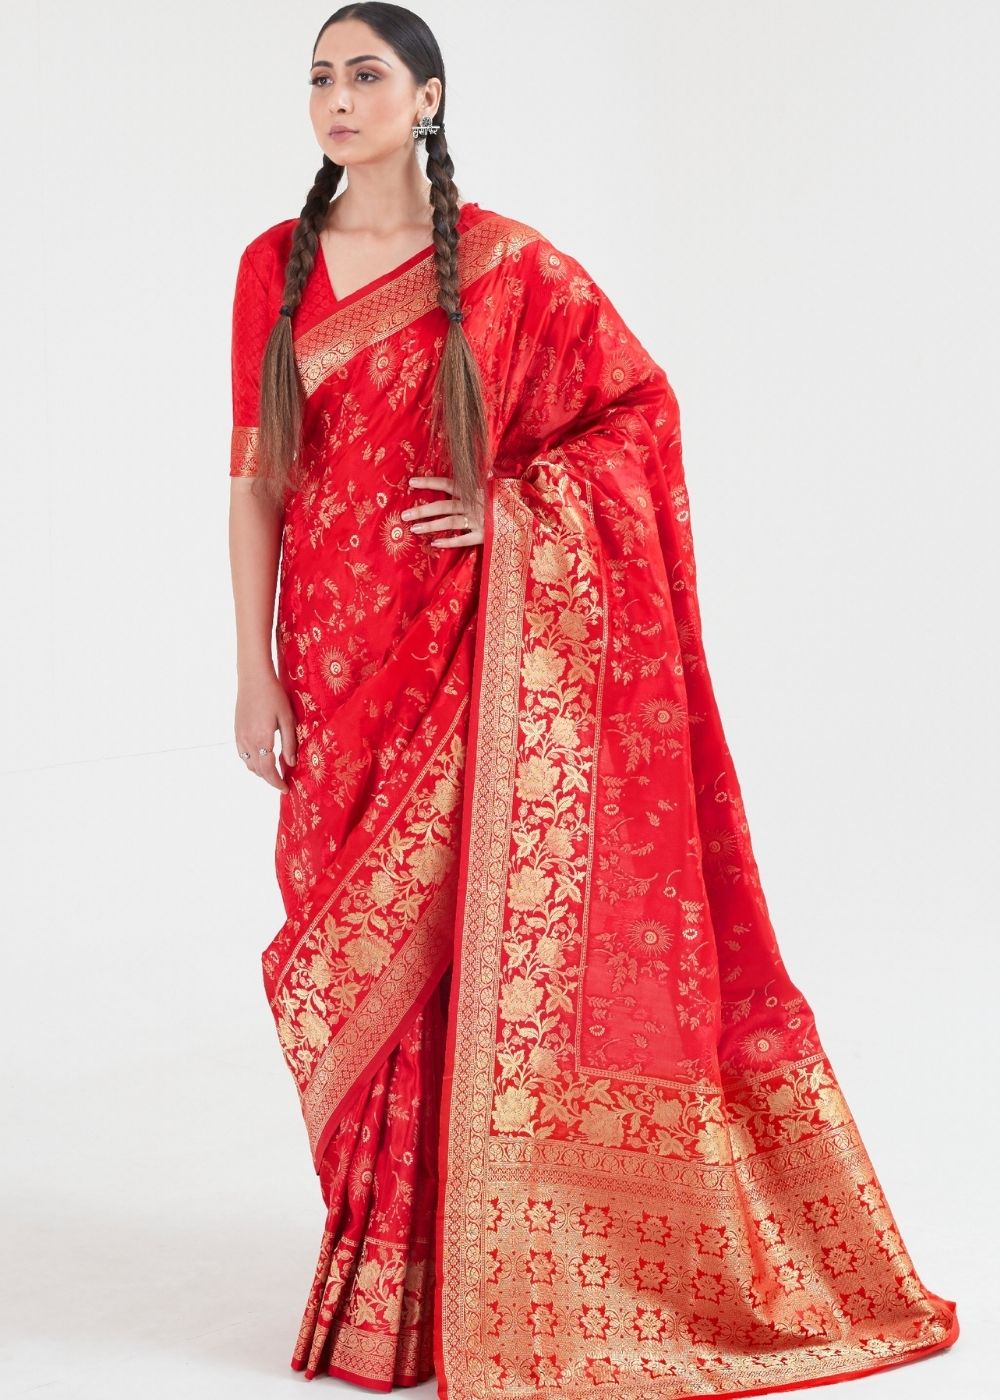 Candy Red Zari Woven Banarasi Silk Saree - Colorful Saree